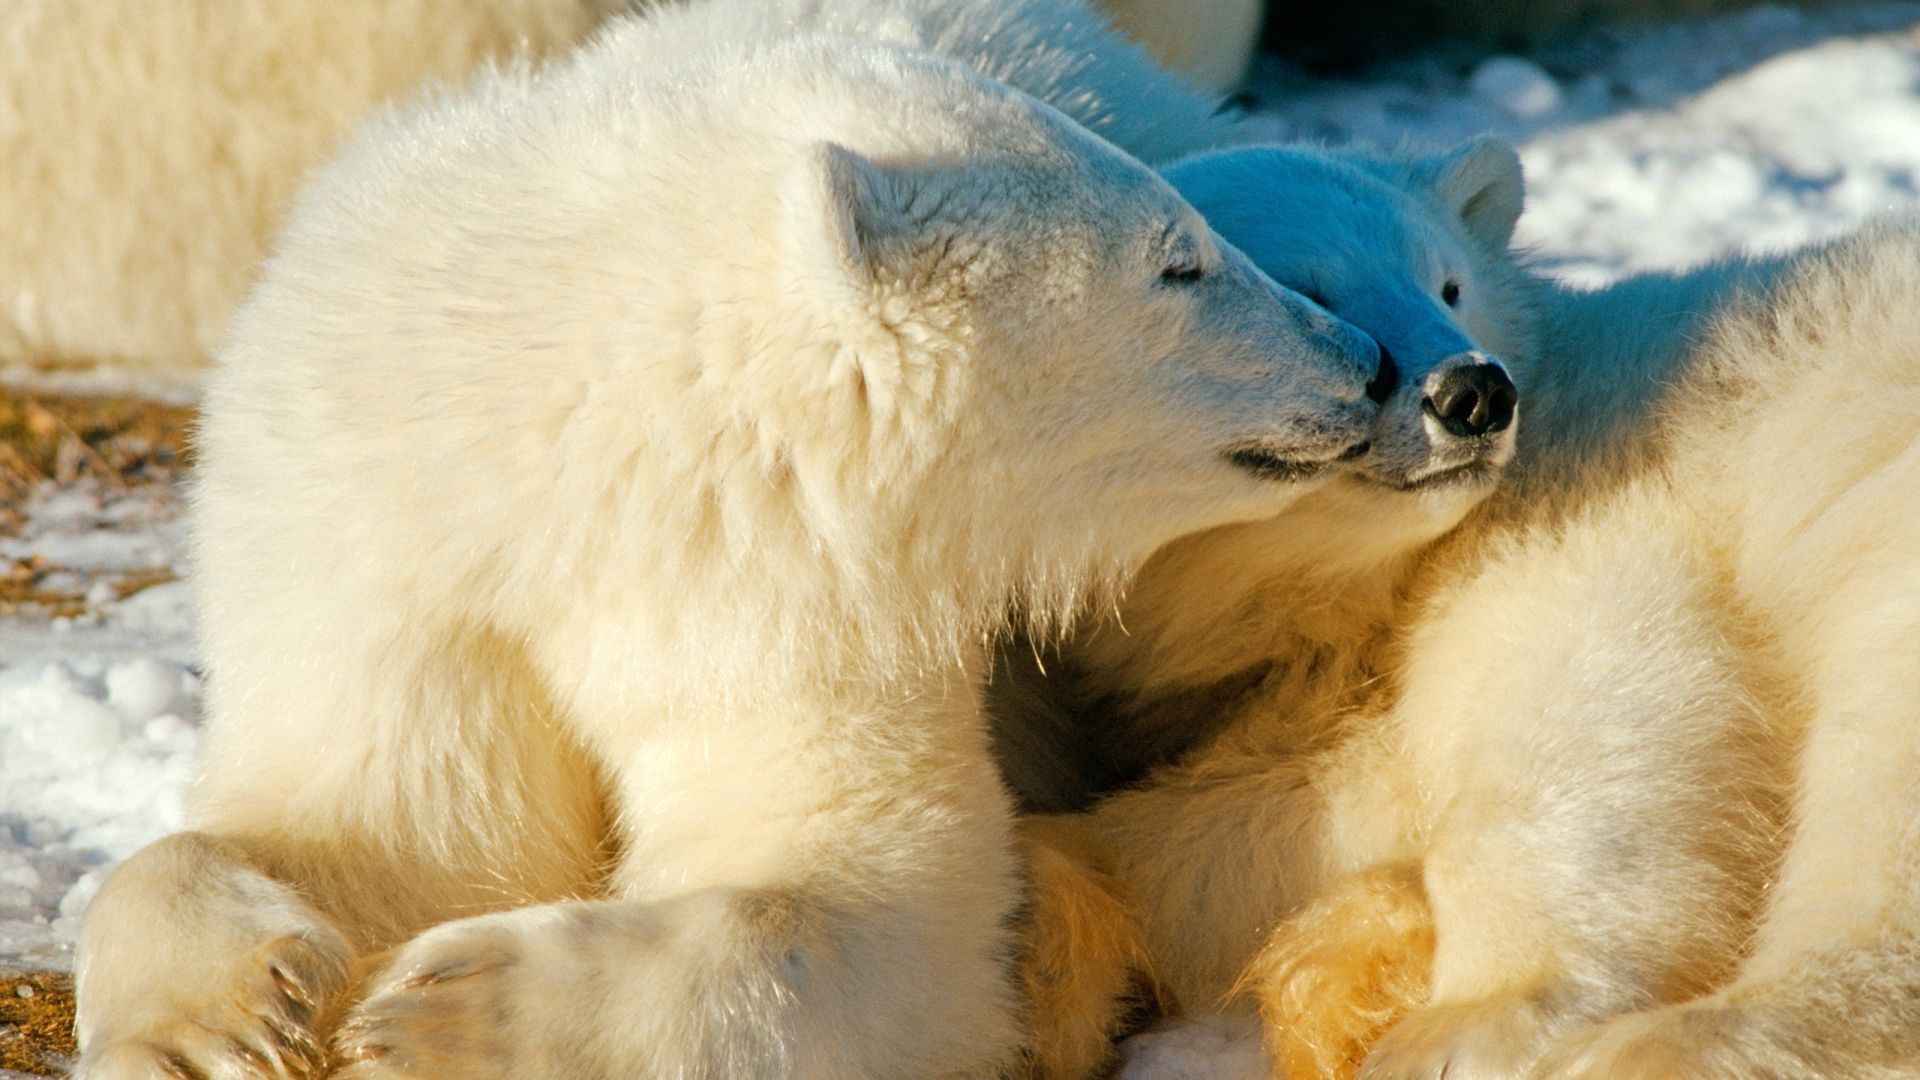 Polar Bears In Love for 1920 x 1080 HDTV 1080p resolution